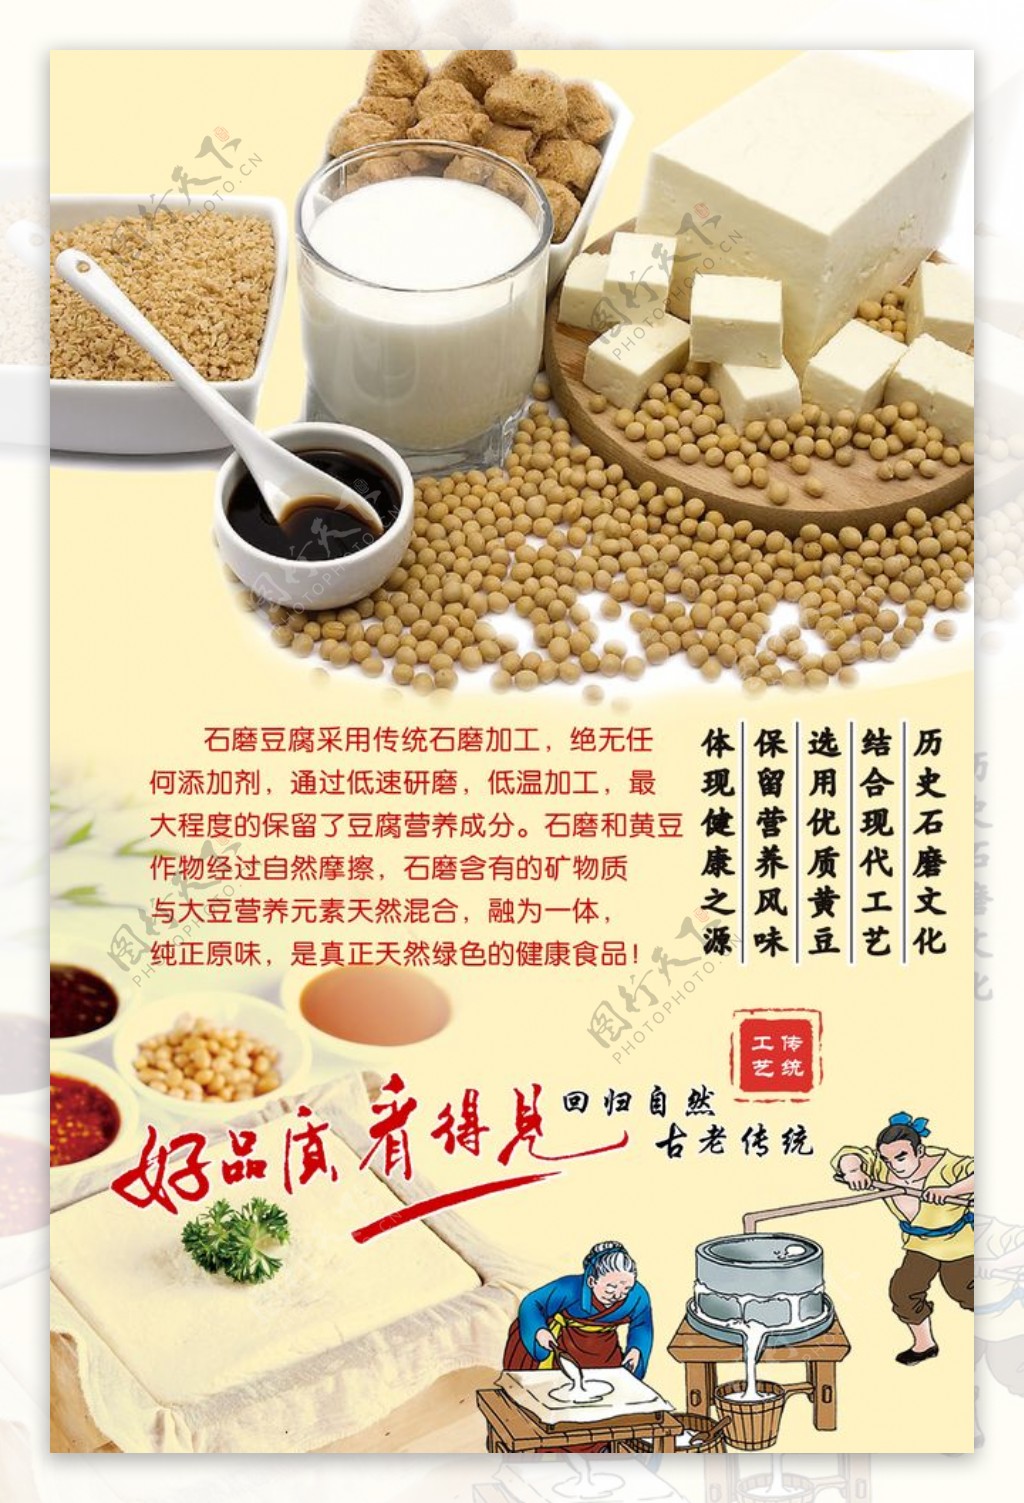 石磨豆腐海报